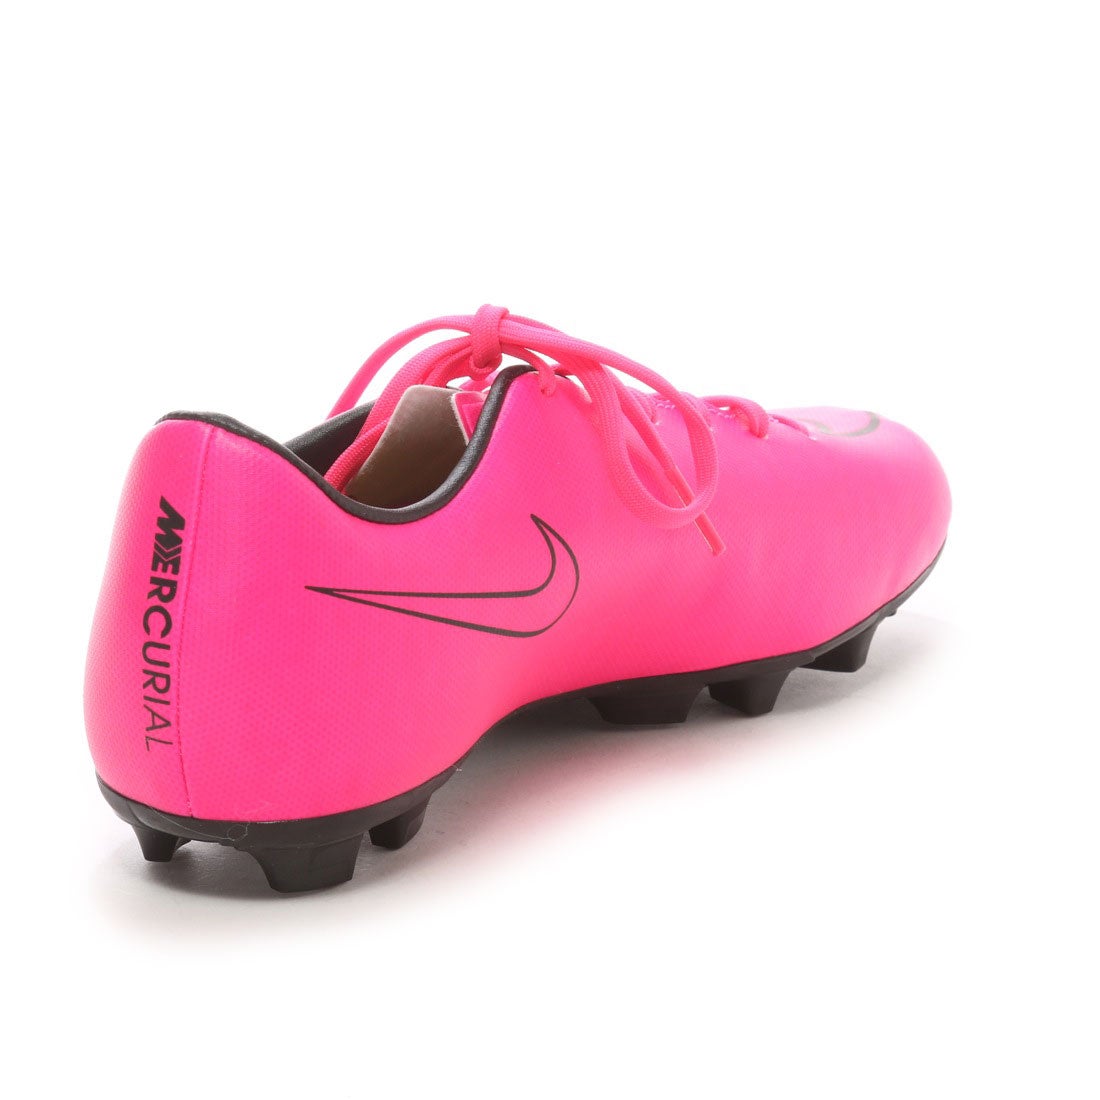 ナイキ Nike ジュニアサッカースパイク Jr マーキュリアル ビクトリー Hg V ピンク 2665 ピンクp ファッション通販 Fashion Walker